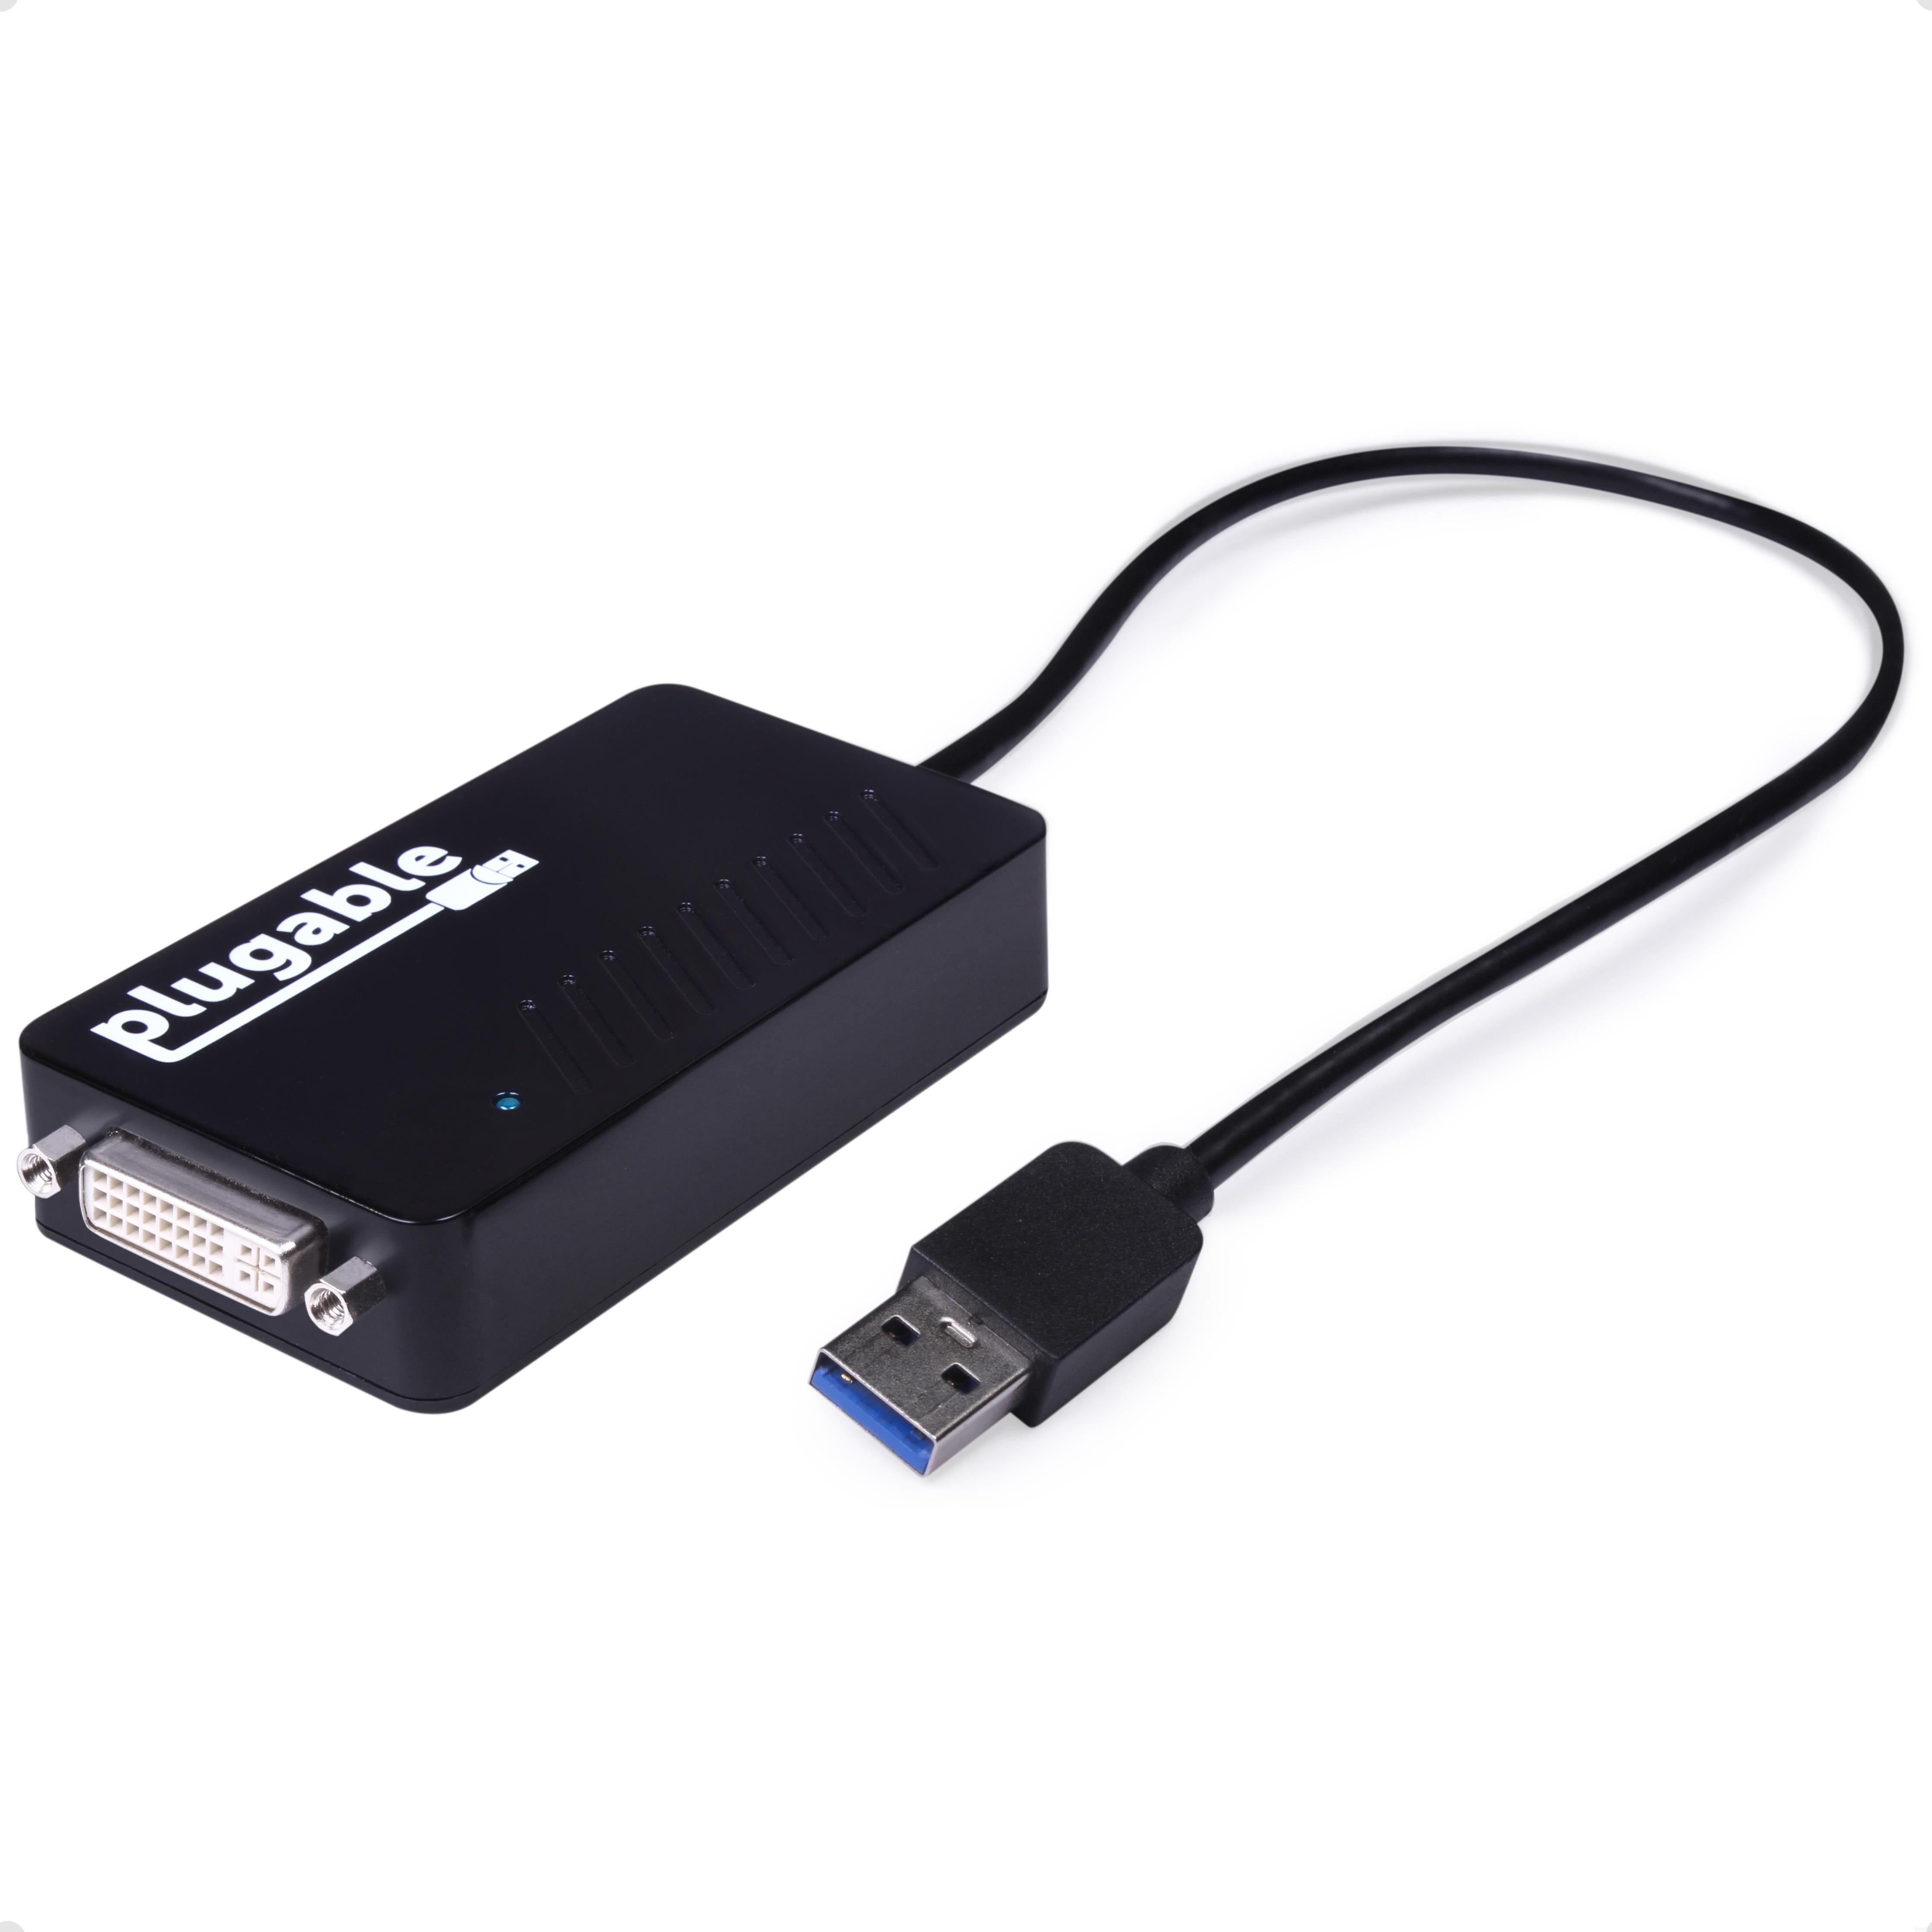 Arbitrage Strength imagine Plugable USB 3.0 HDMI/DVI/VGA Adapter for Multiple Monitors – Plugable  Technologies